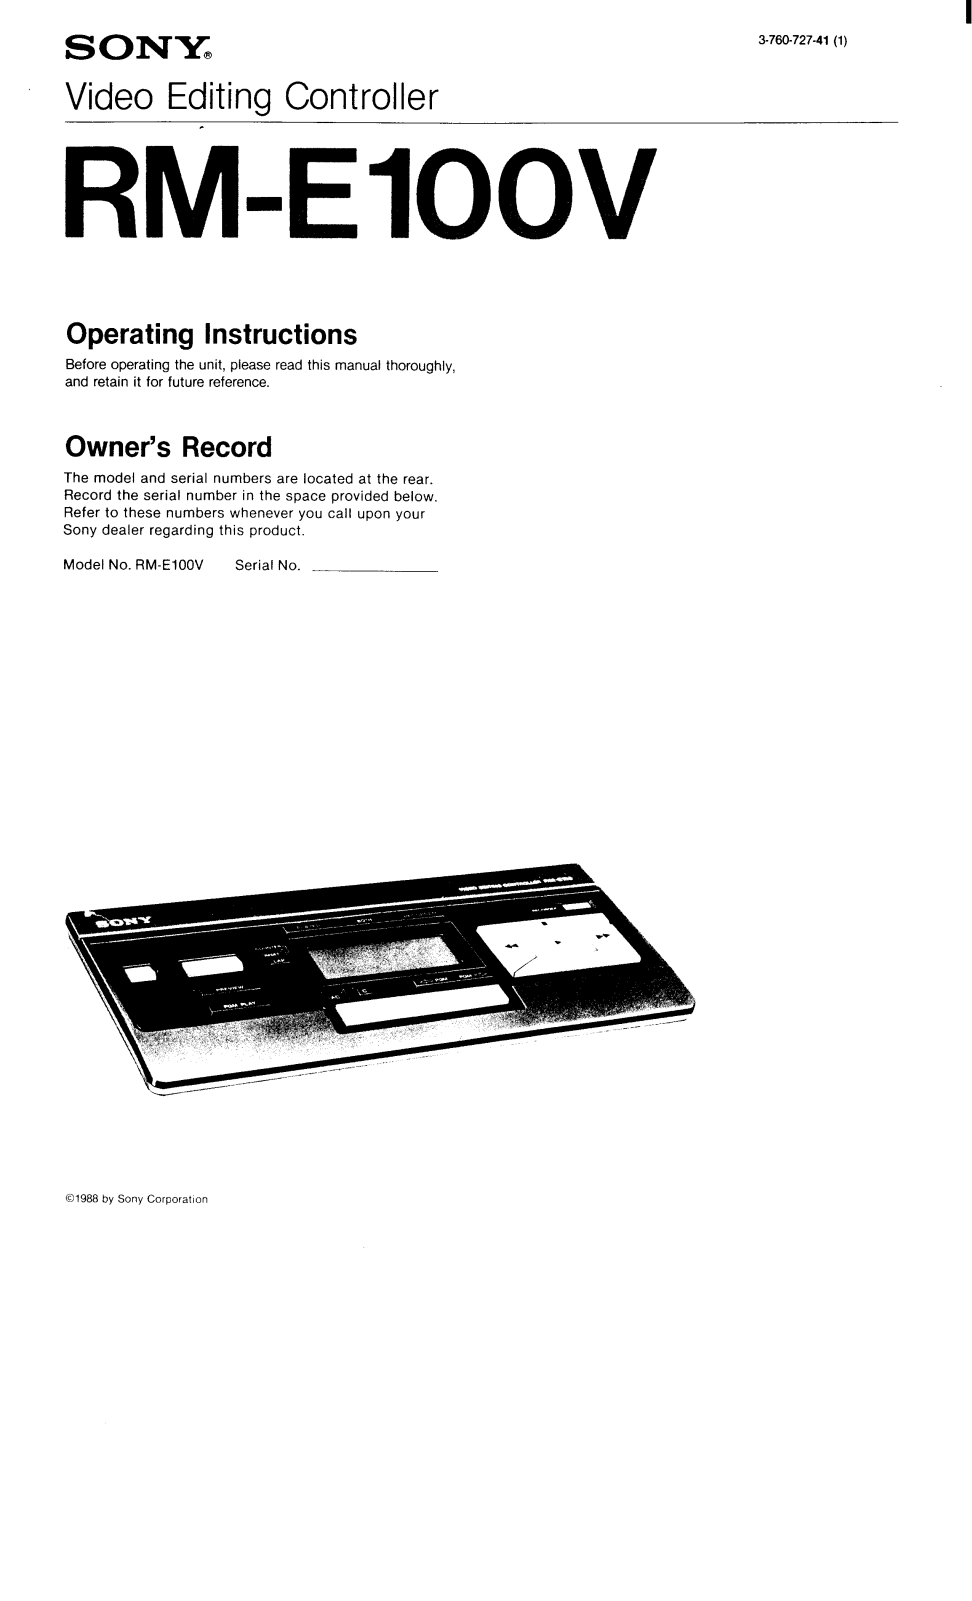 Sony RM-E100V Operating Manual